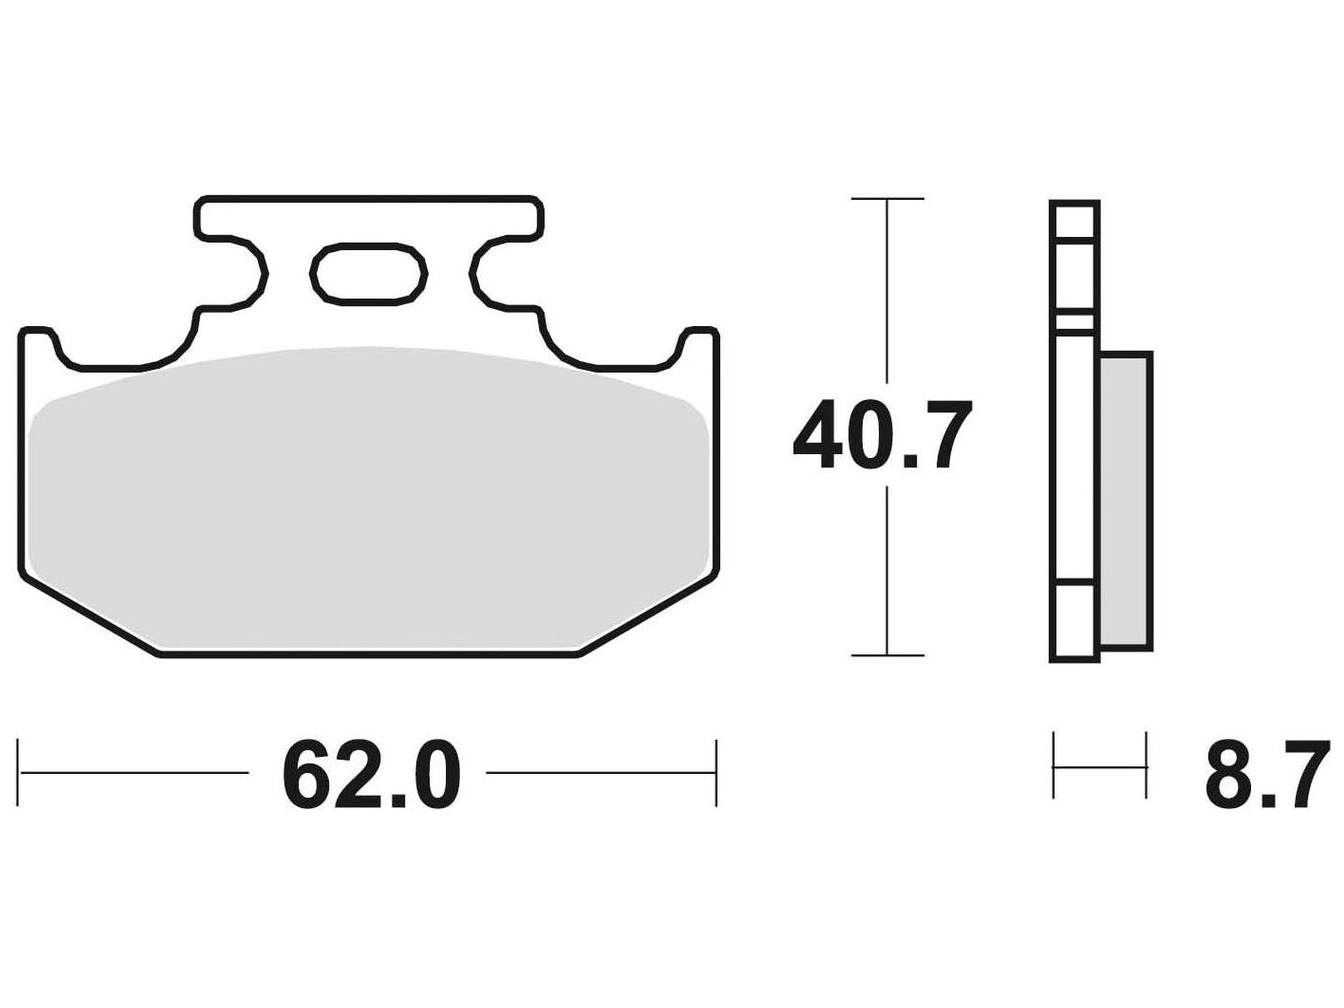 brzdové destičky, BRAKING (sinterová směs CM44) 2 ks v balení